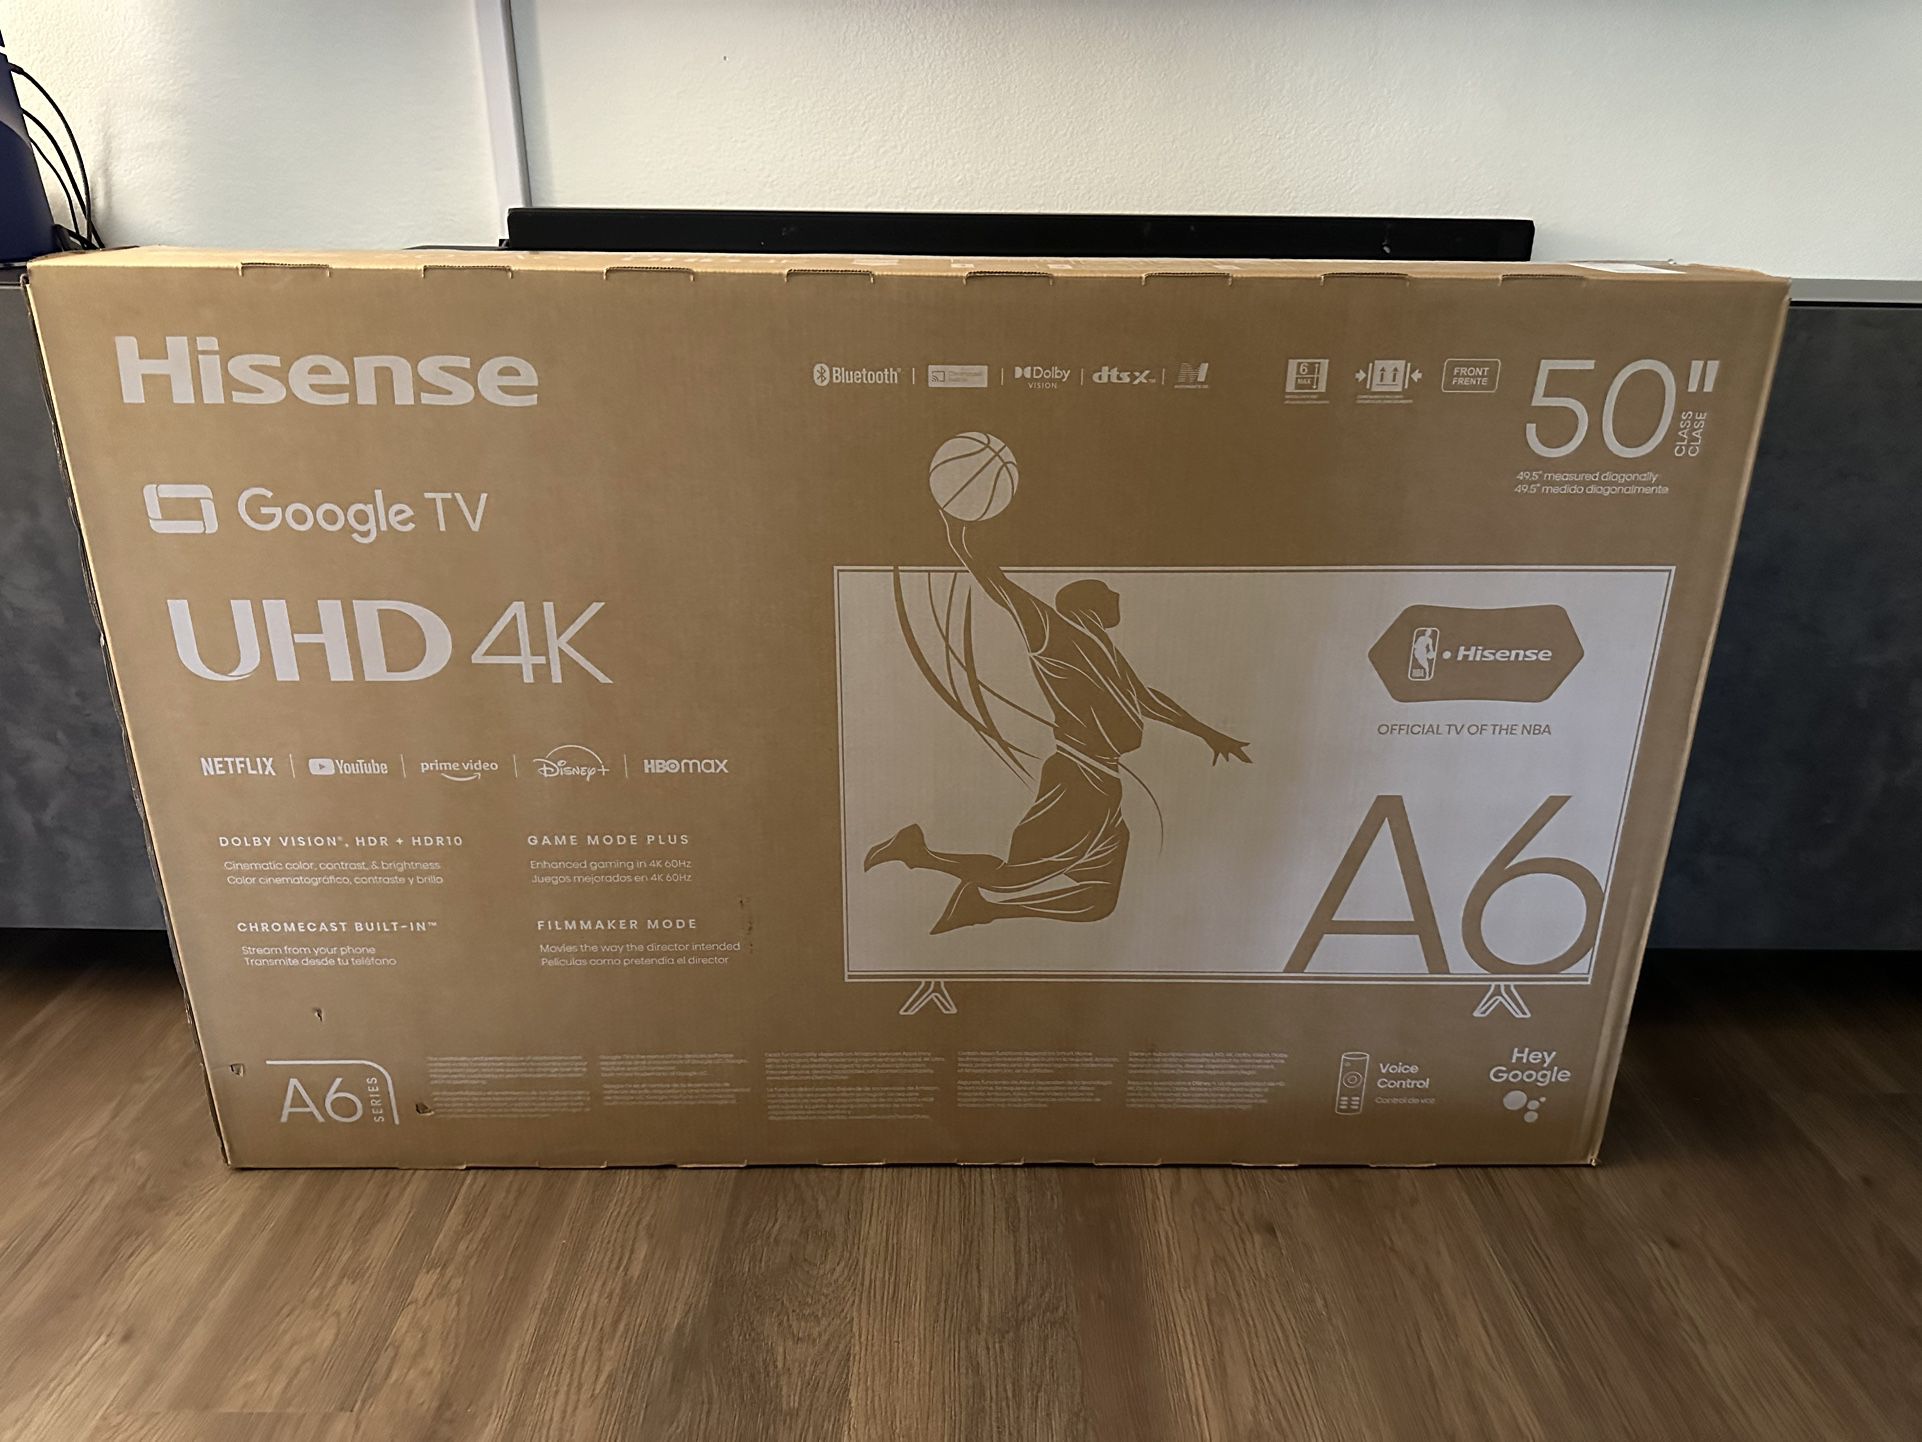 Hisense 50” UHD 4K TV